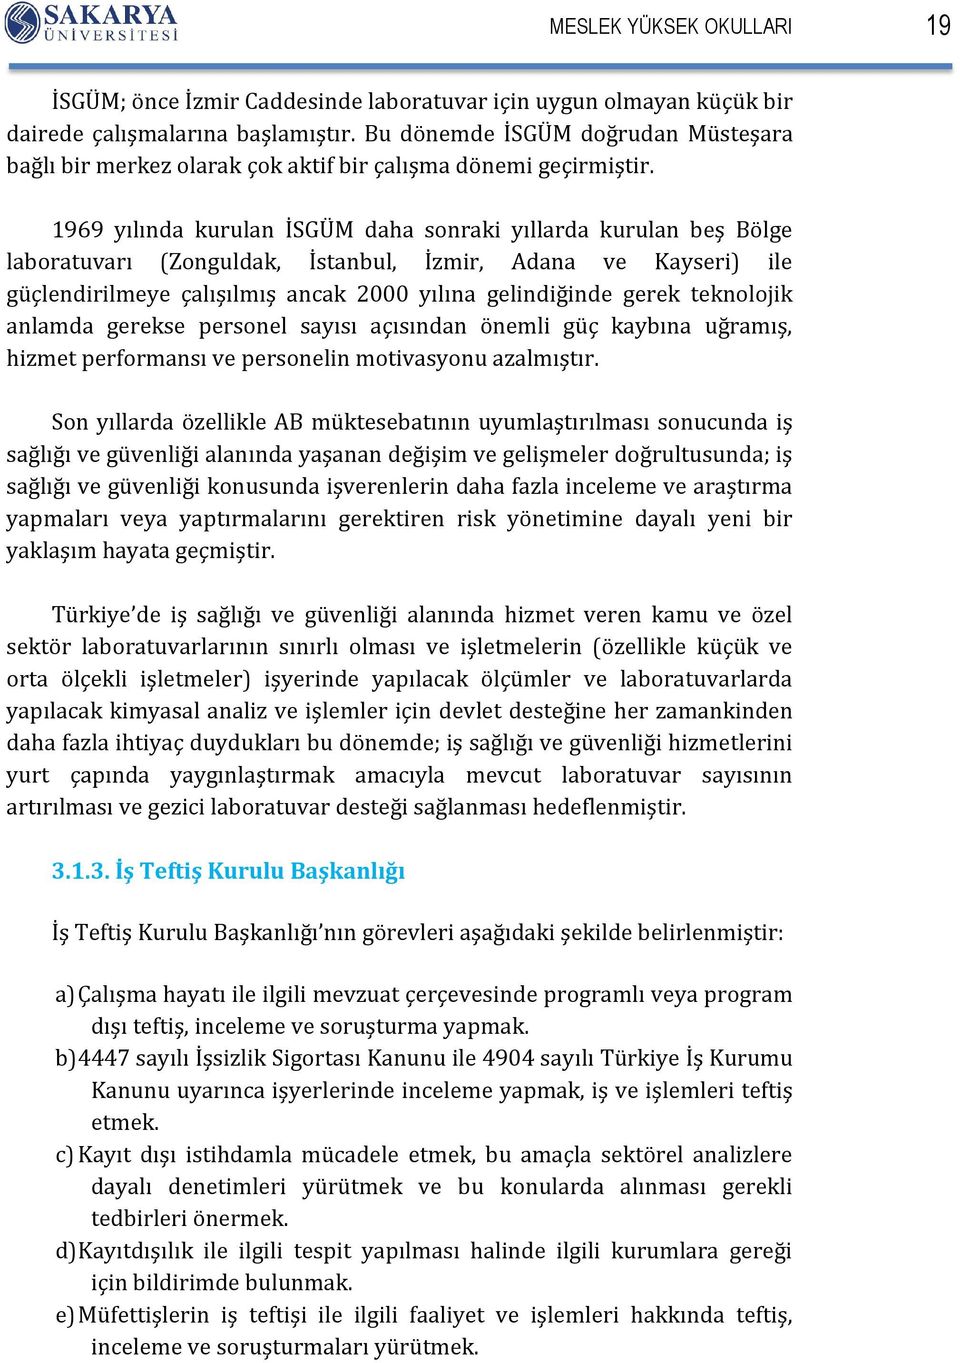 1969 yılında kurulan İSGÜM daha sonraki yıllarda kurulan beş Bölge laboratuvarı (Zonguldak, İstanbul, İzmir, Adana ve Kayseri) ile güçlendirilmeye çalışılmış ancak 2000 yılına gelindiğinde gerek